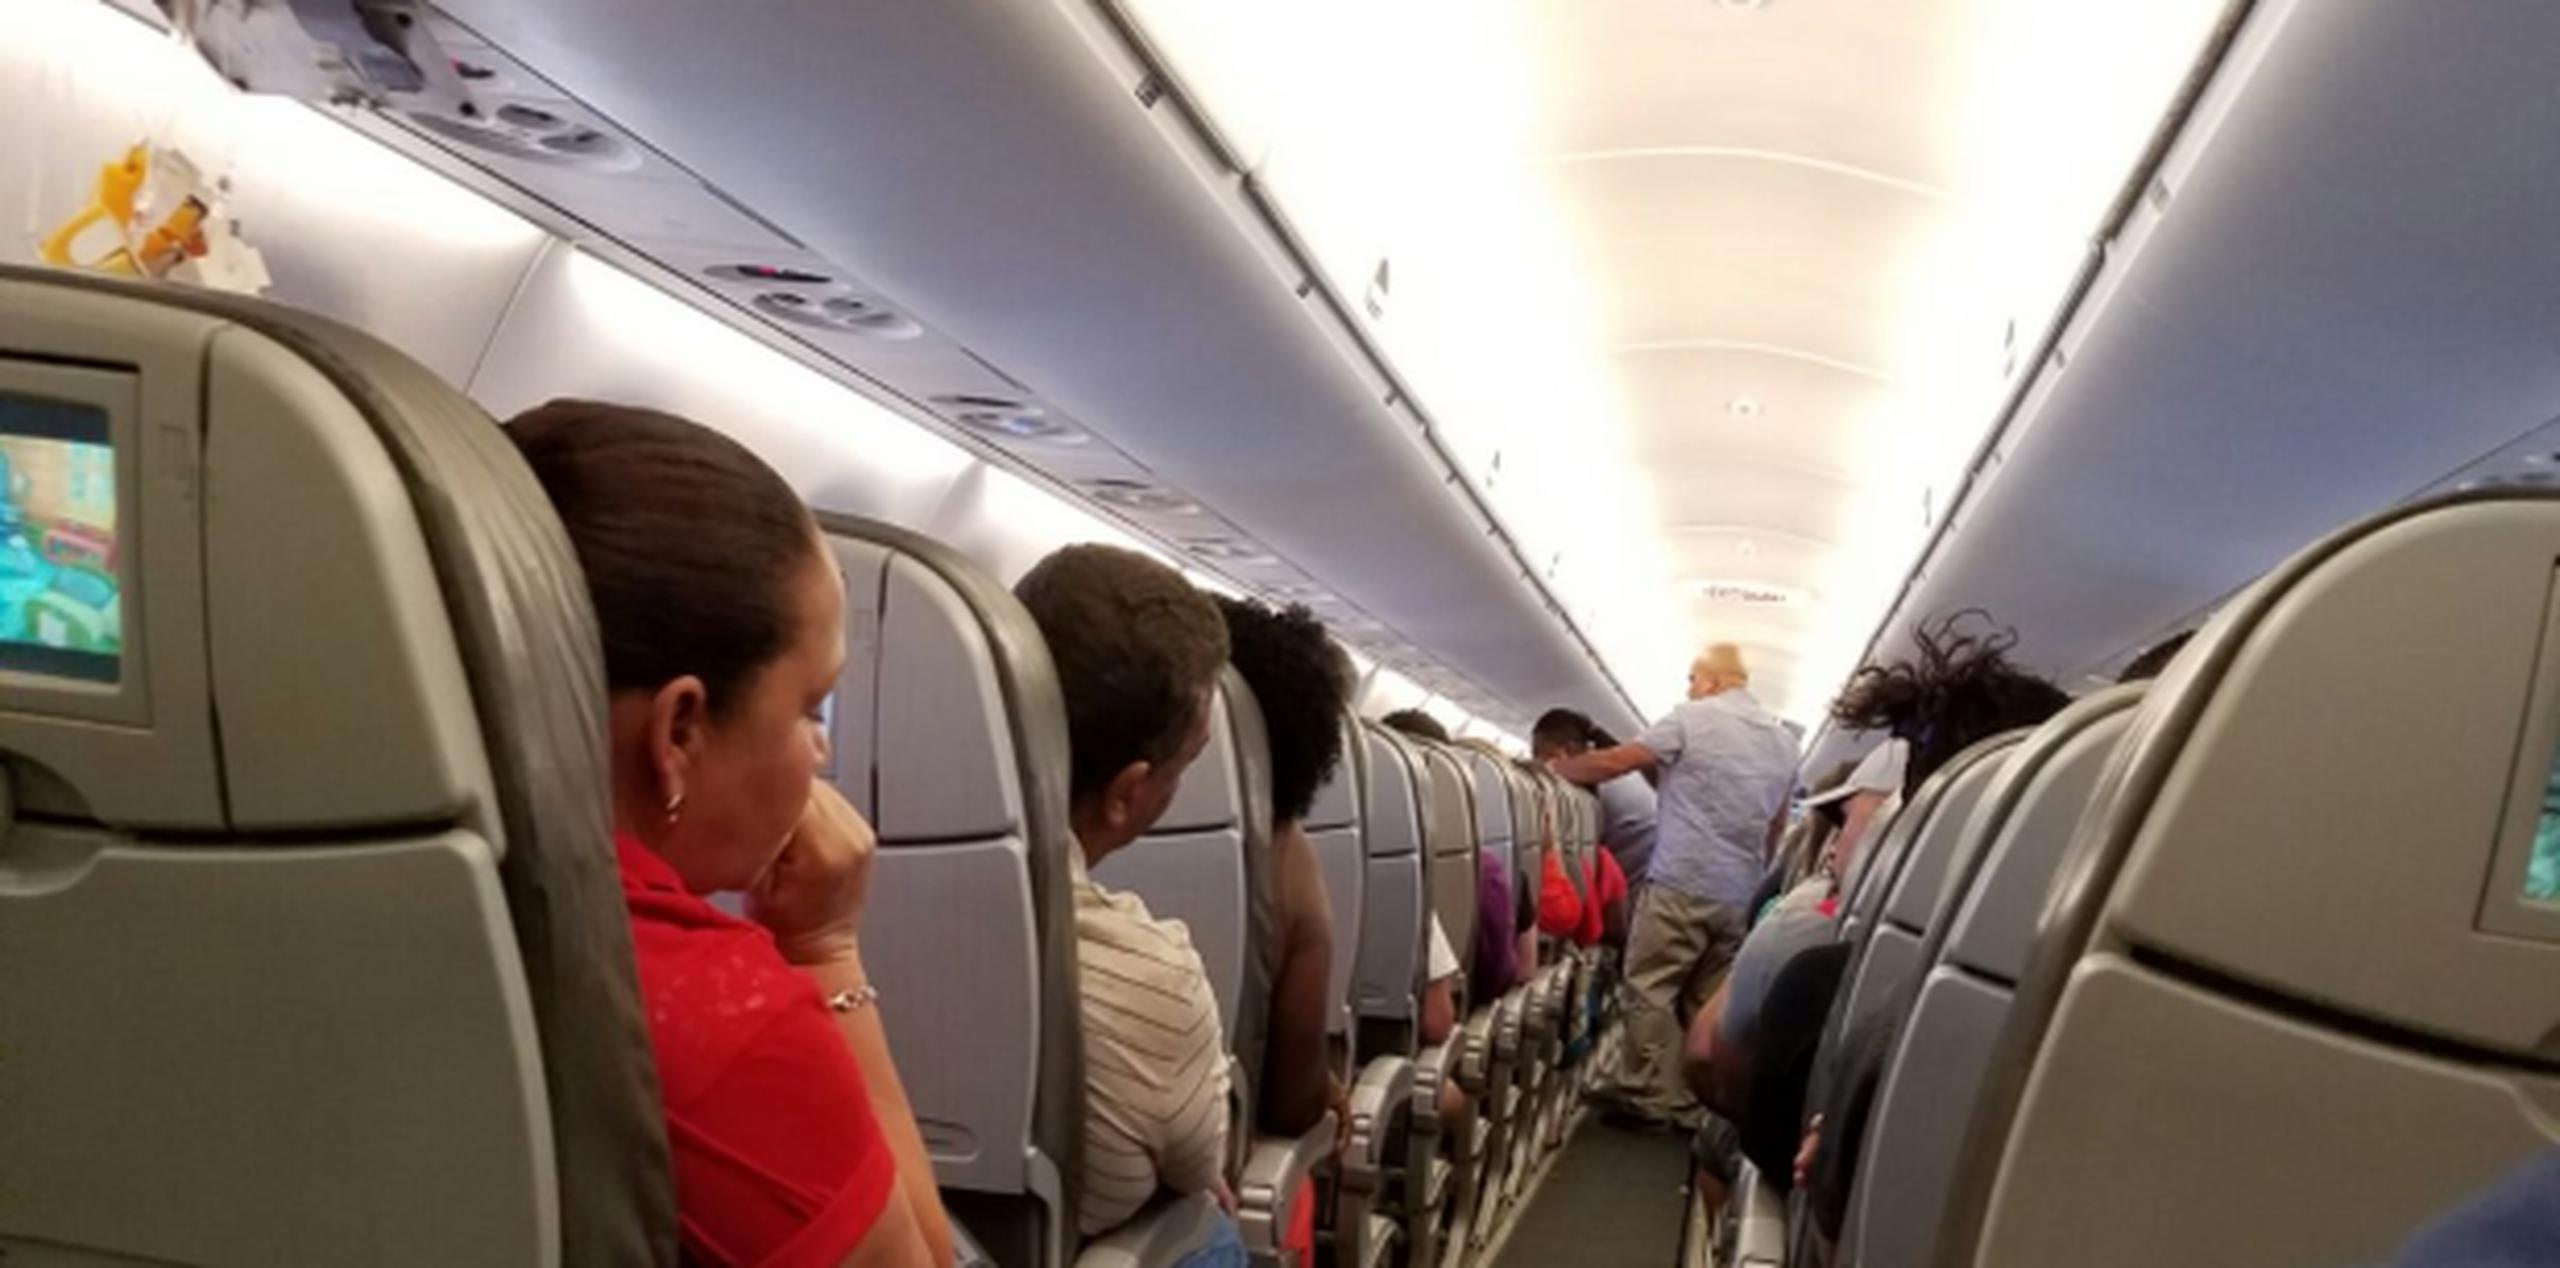 La representante de relaciones públicas para JetBlue en el Caribe, Coral Gotay Acosta, aseguró mediante comunicación escrita a Primera Hora que los ocho pasajeros están fuera de peligro y de regreso a sus casas. (Suministrada)